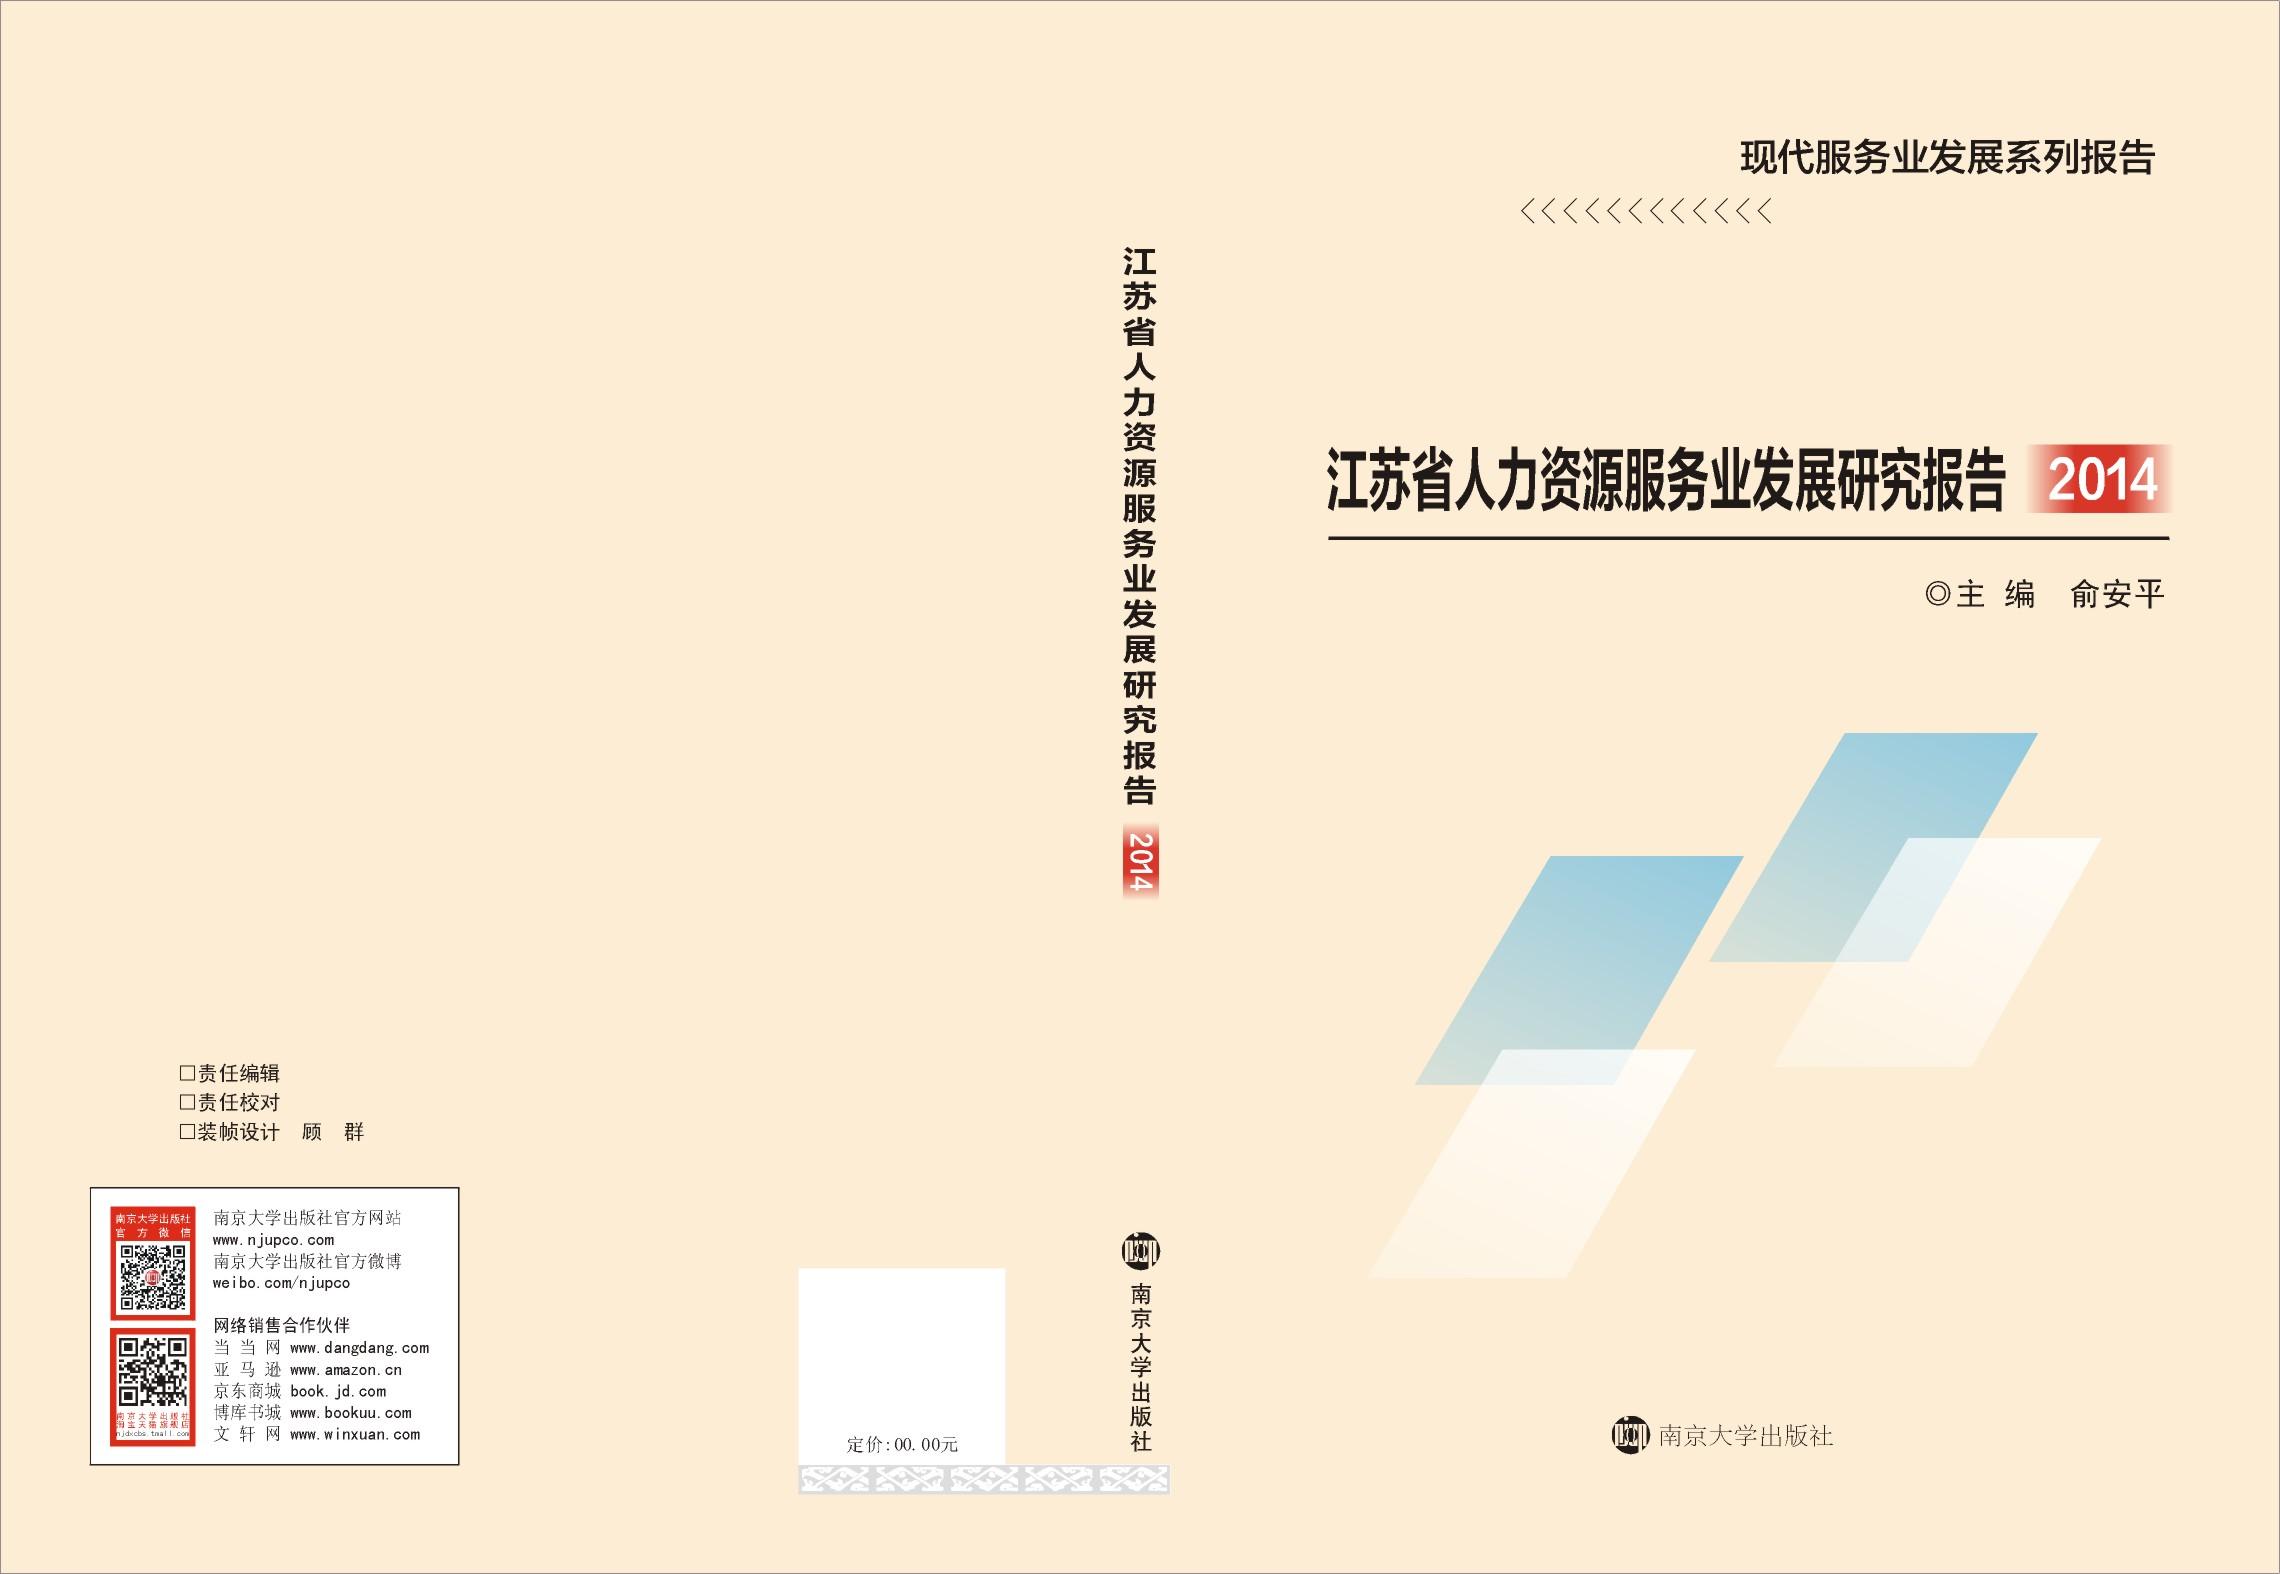 江蘇省人力資源服務業發展研究報告2014